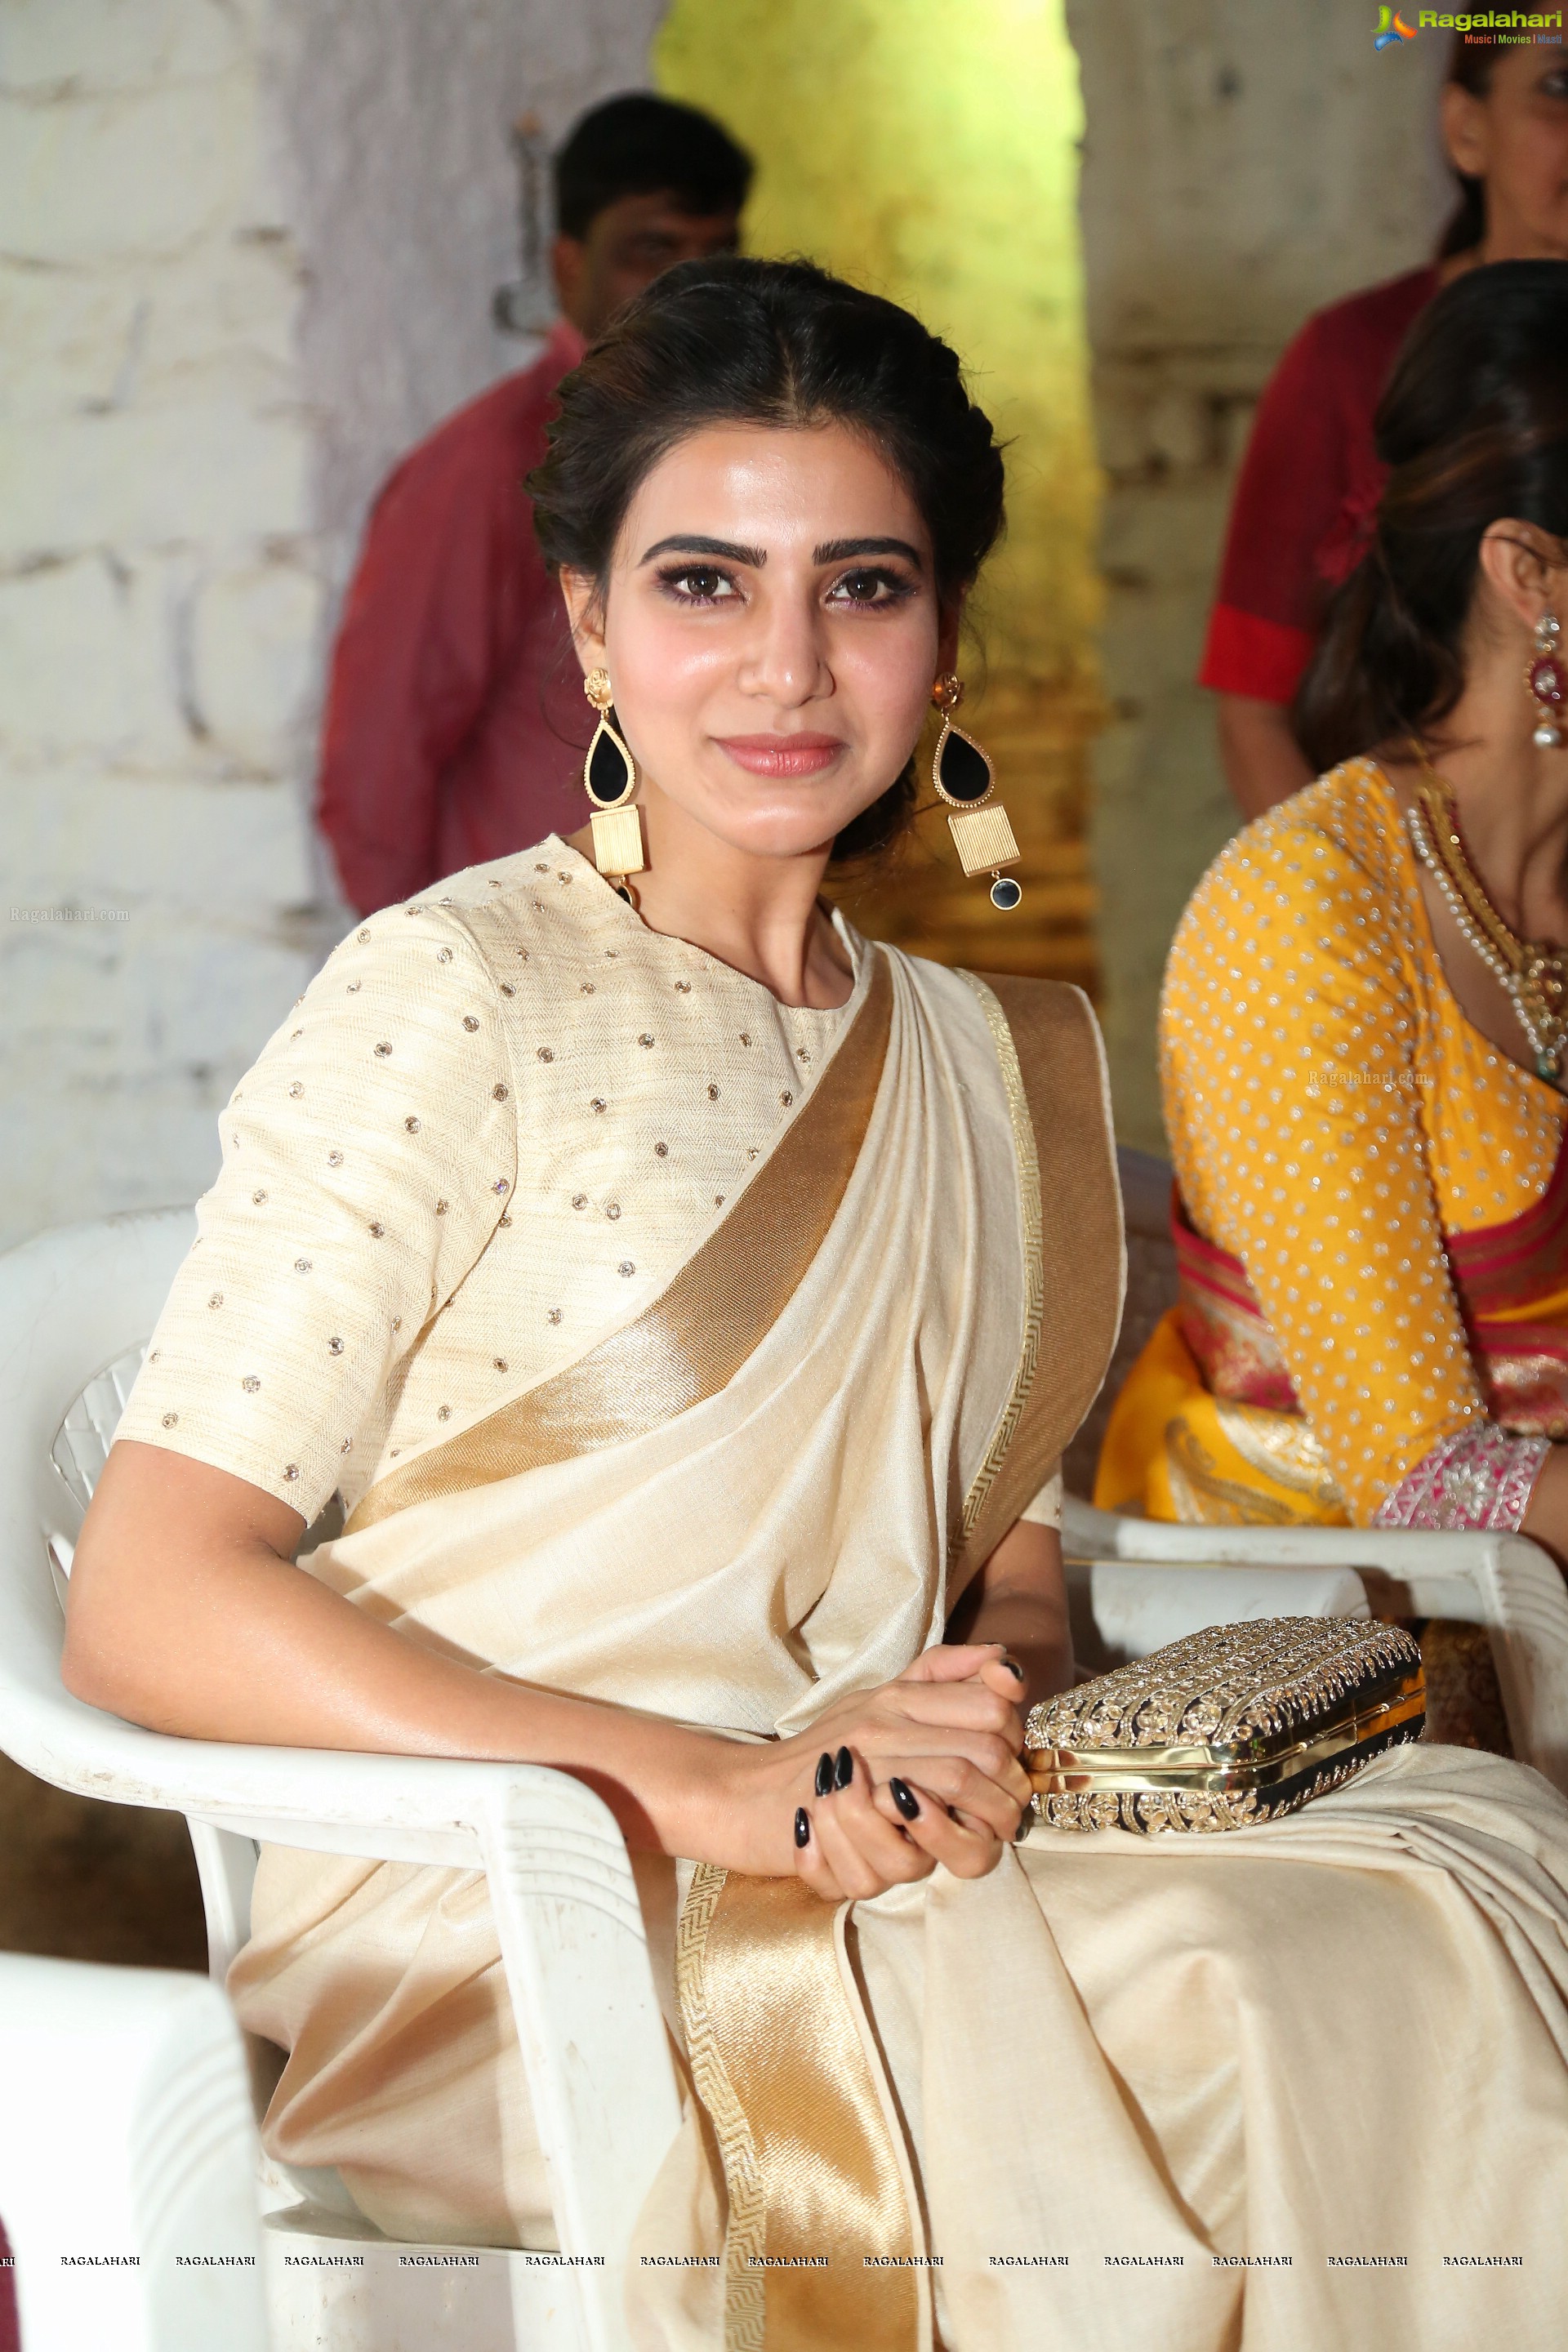 Samantha at Gudi Sambaralu 2017 at Sri Ramachandra Swami Temple